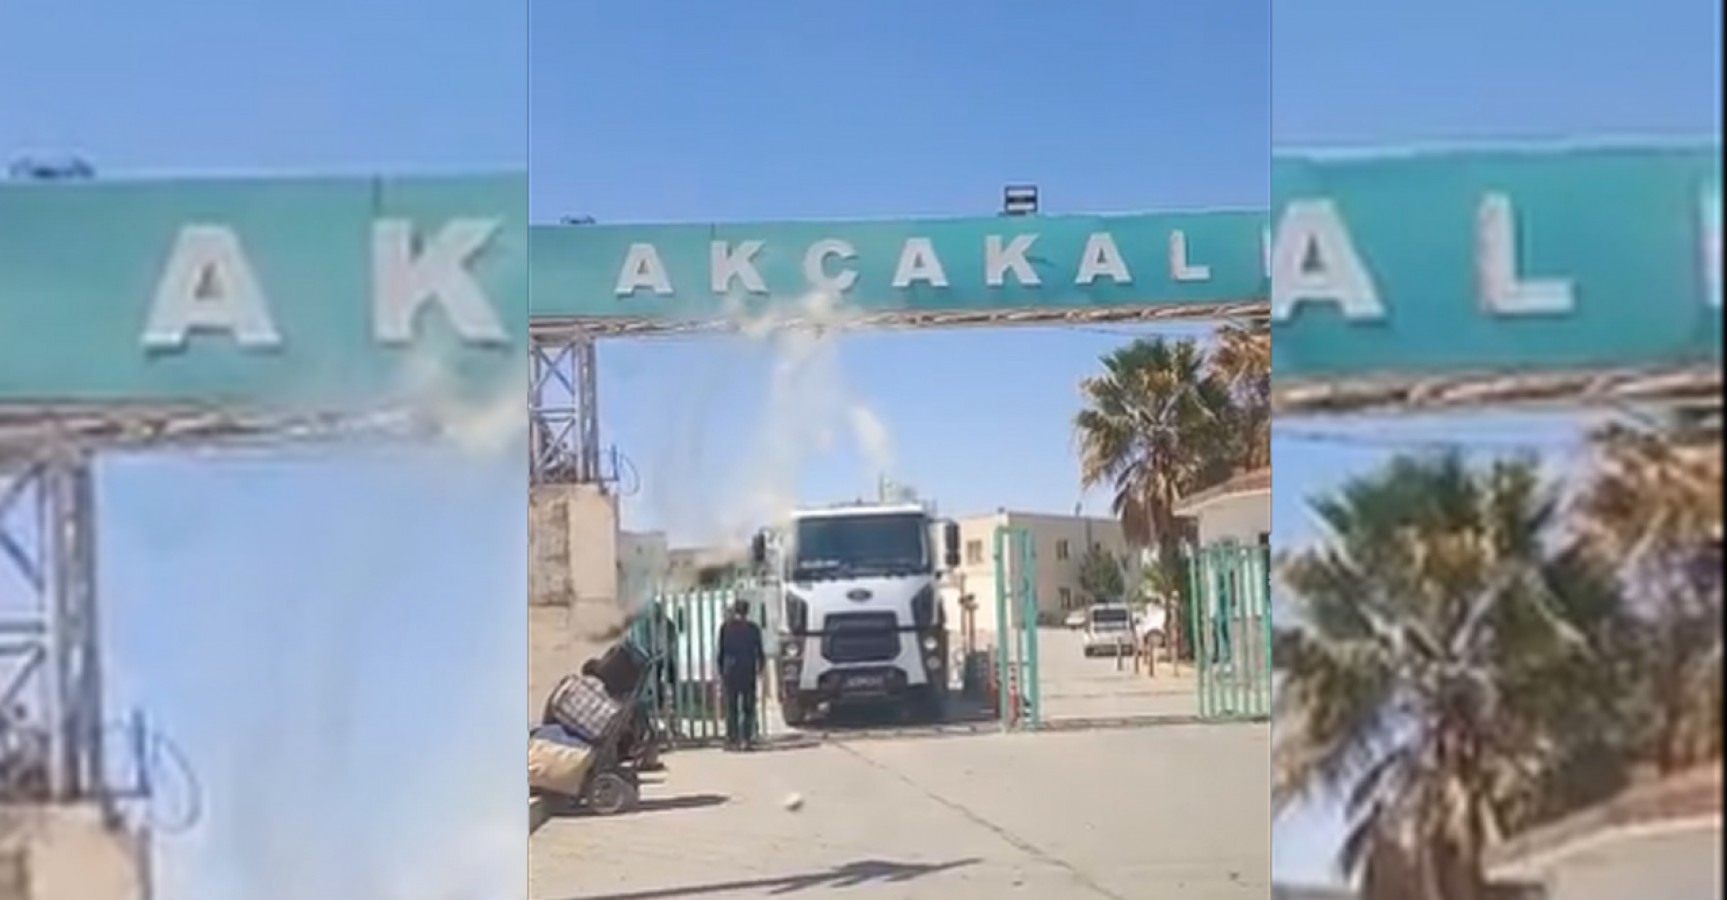 Akçakale Belediyesi'nden Suriye'den çöp toplanıyor iddialarına yanıt